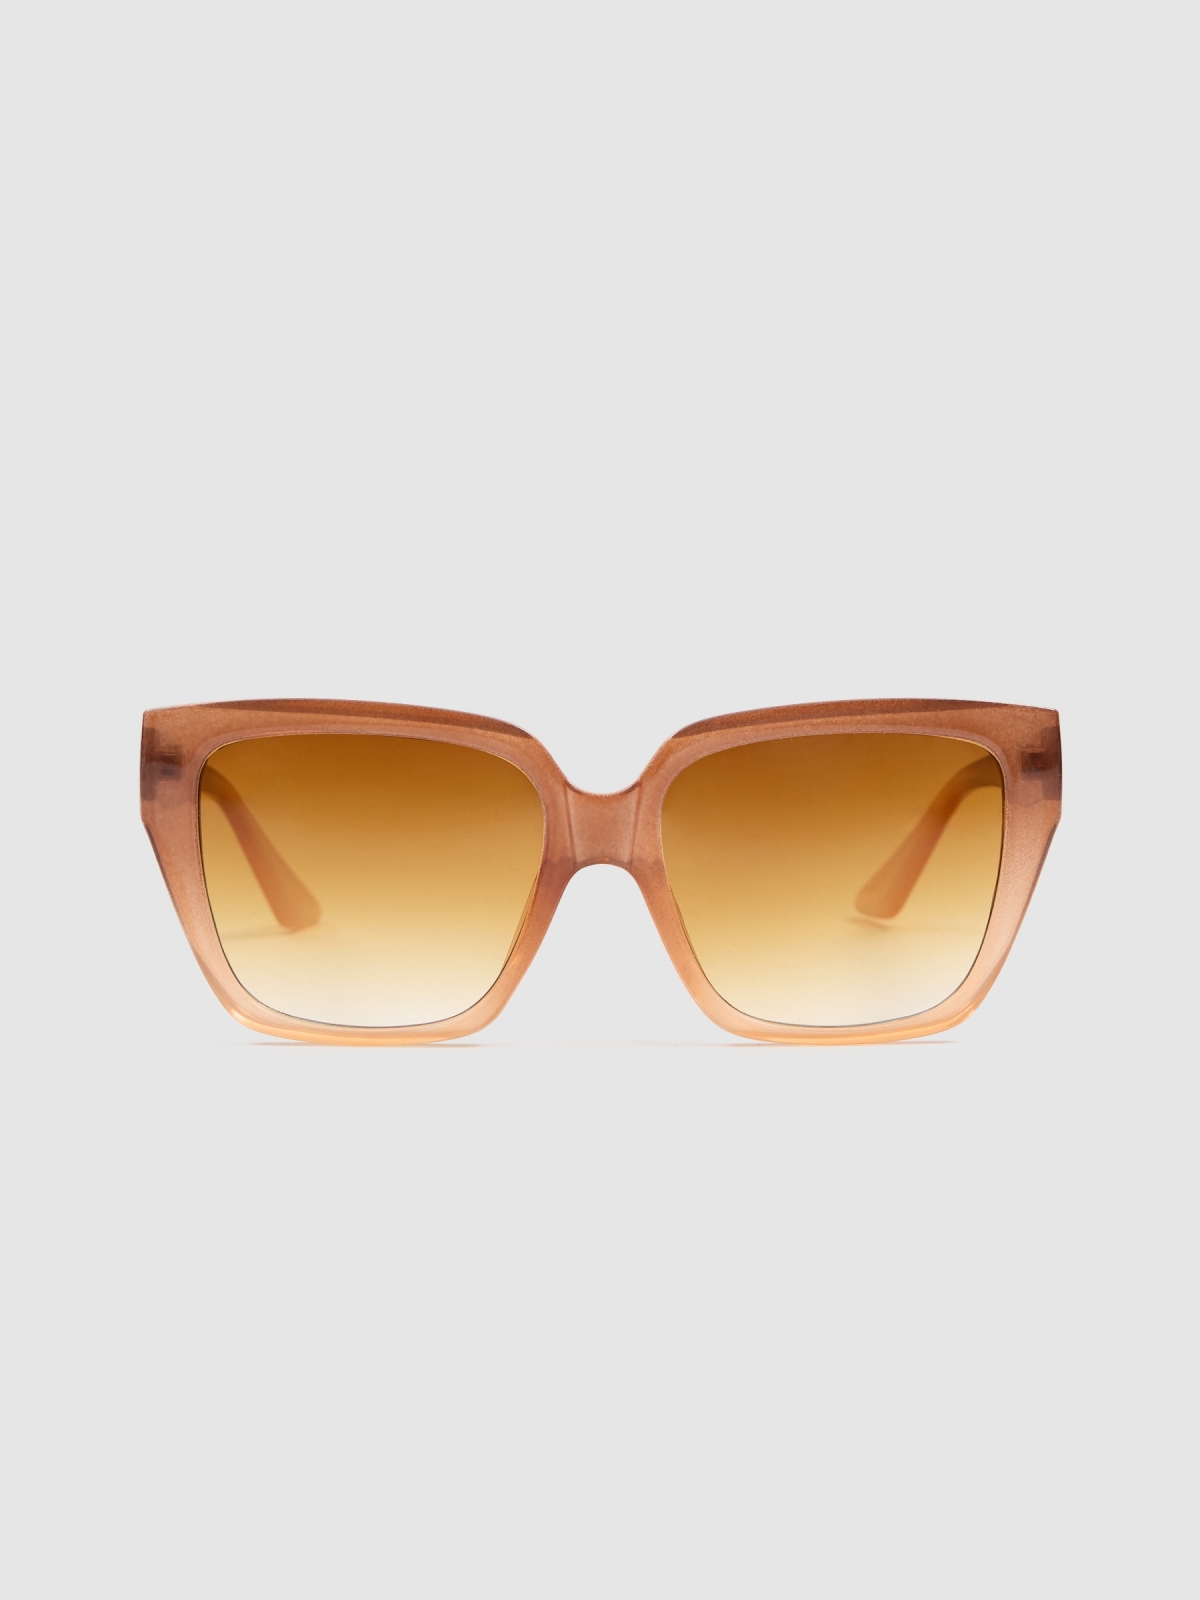 Square acetate sunglasses brown